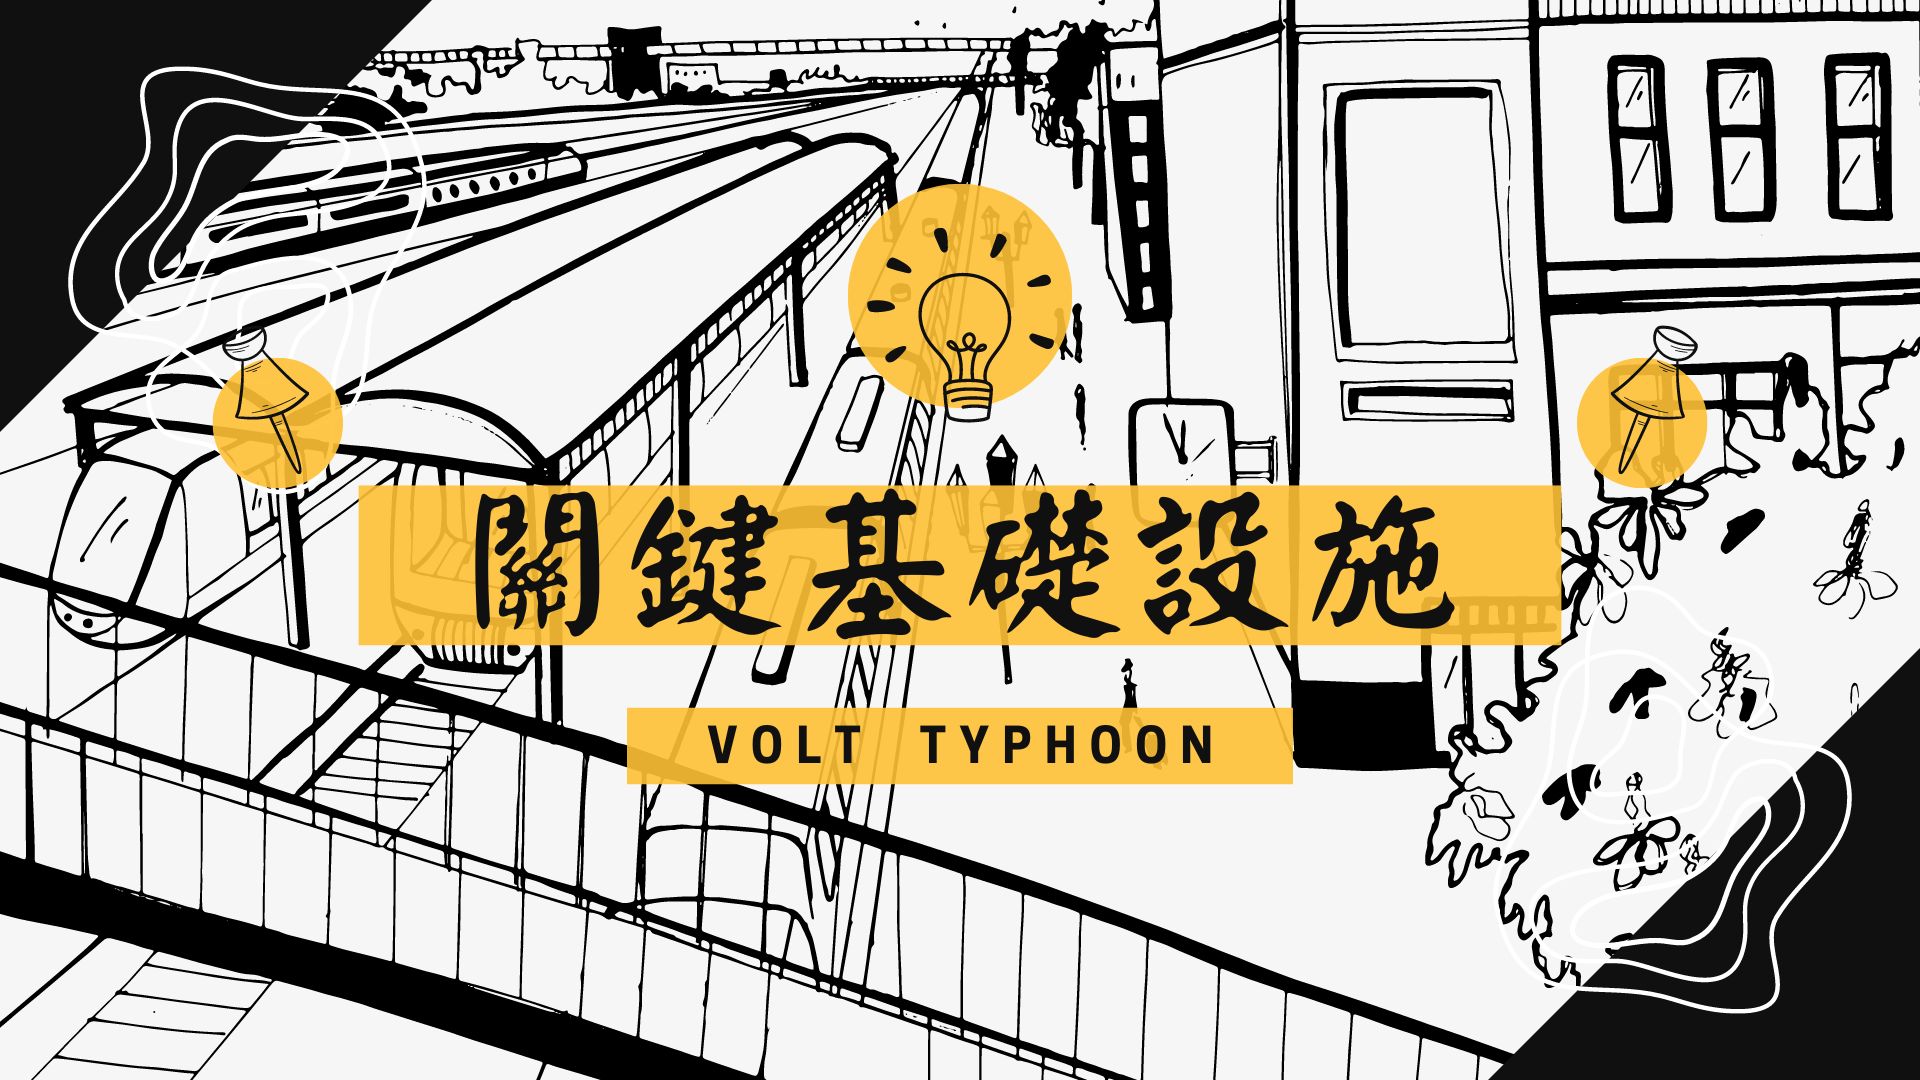 「Volt Typhoon」給關鍵基礎設施相關組織的啟示